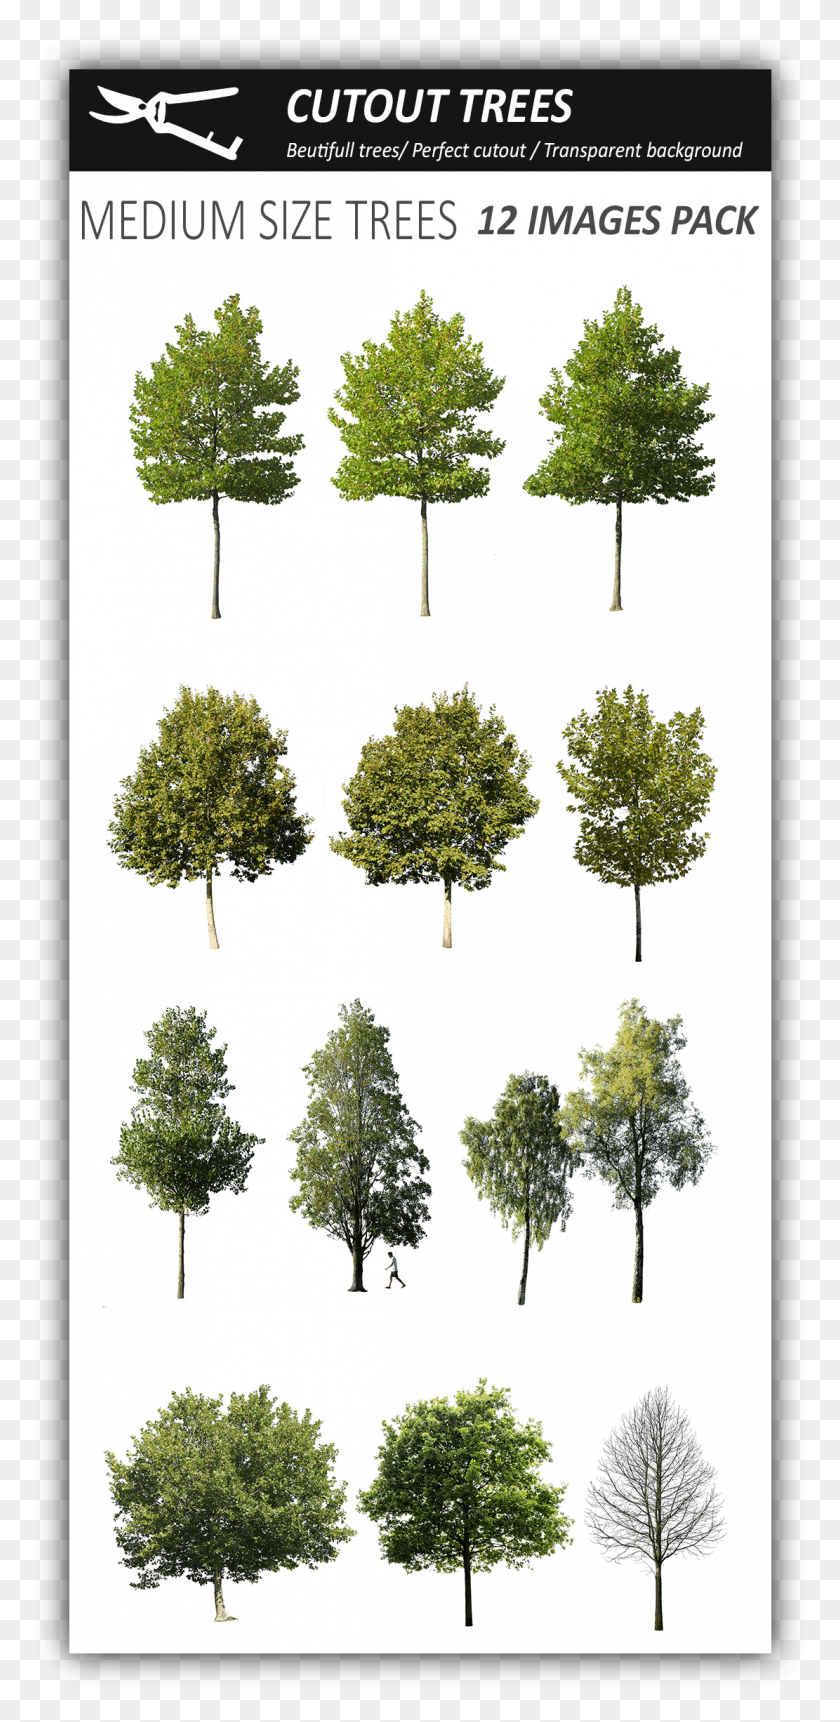 1111x2368 Pin Do Cutout Trees Em Photoshop Растительность, Вырезка Из Дерева, Растение, Дуб, Ствол Дерева Png Скачать